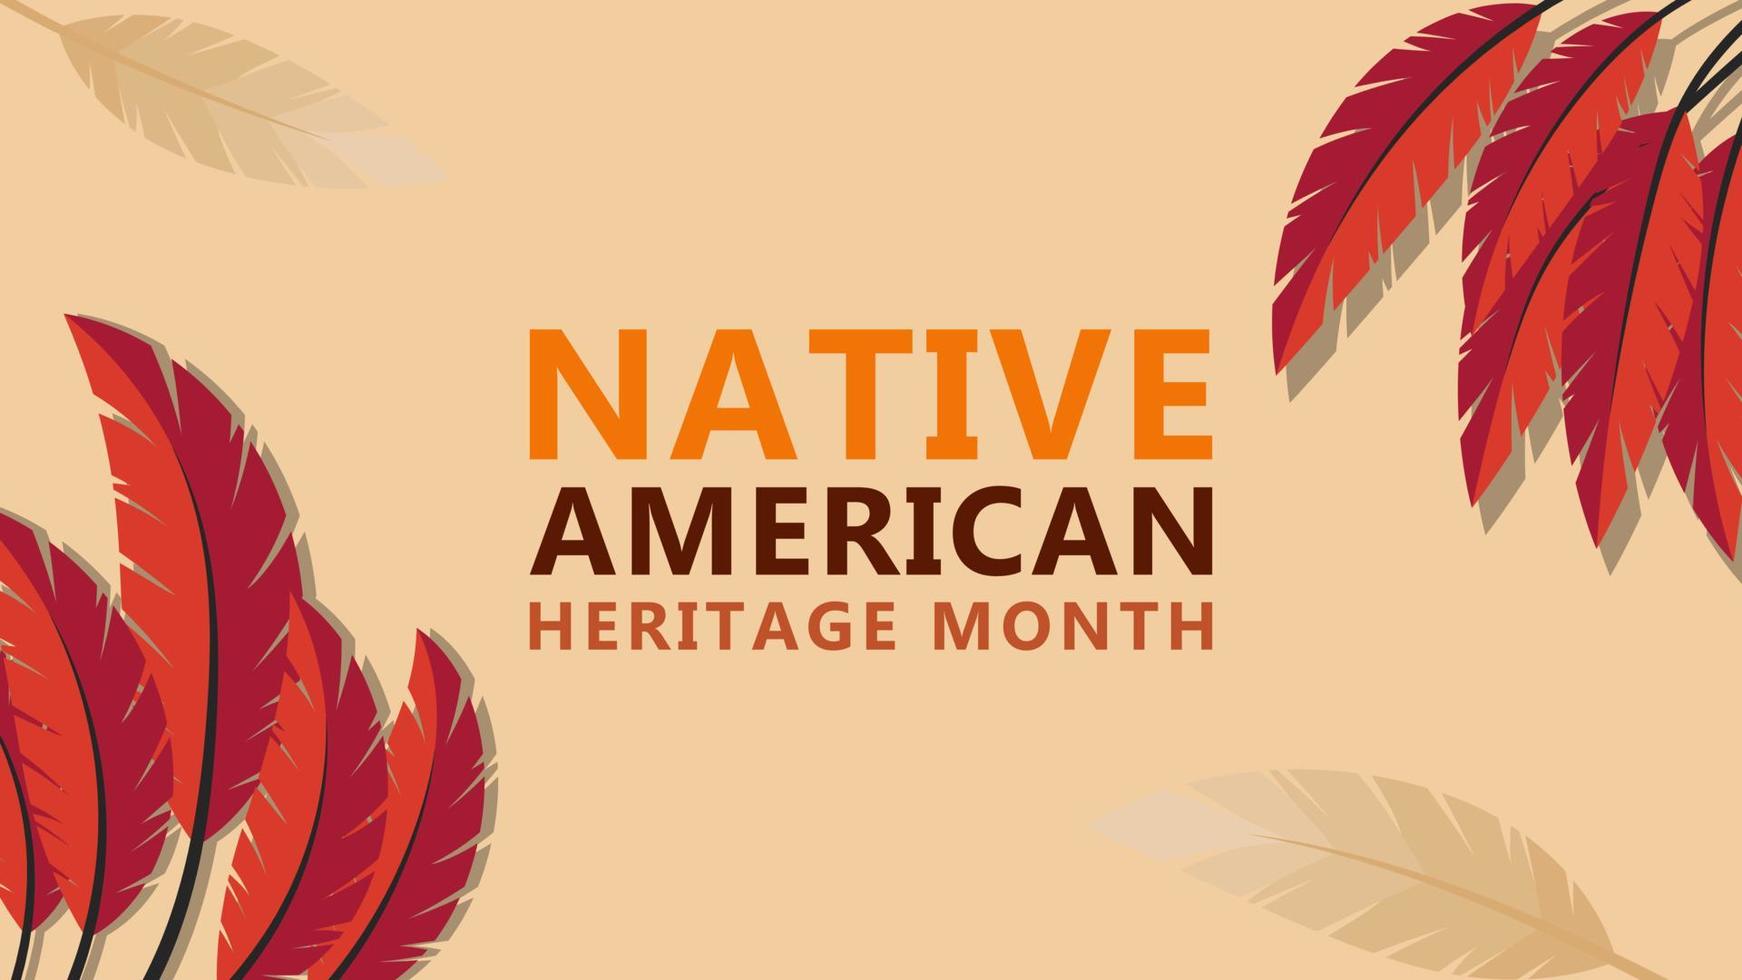 Monat des Erbes der amerikanischen Ureinwohner. hintergrunddesign mit abstrakten ornamenten, die gebürtige indianer in amerika feiern. vektor